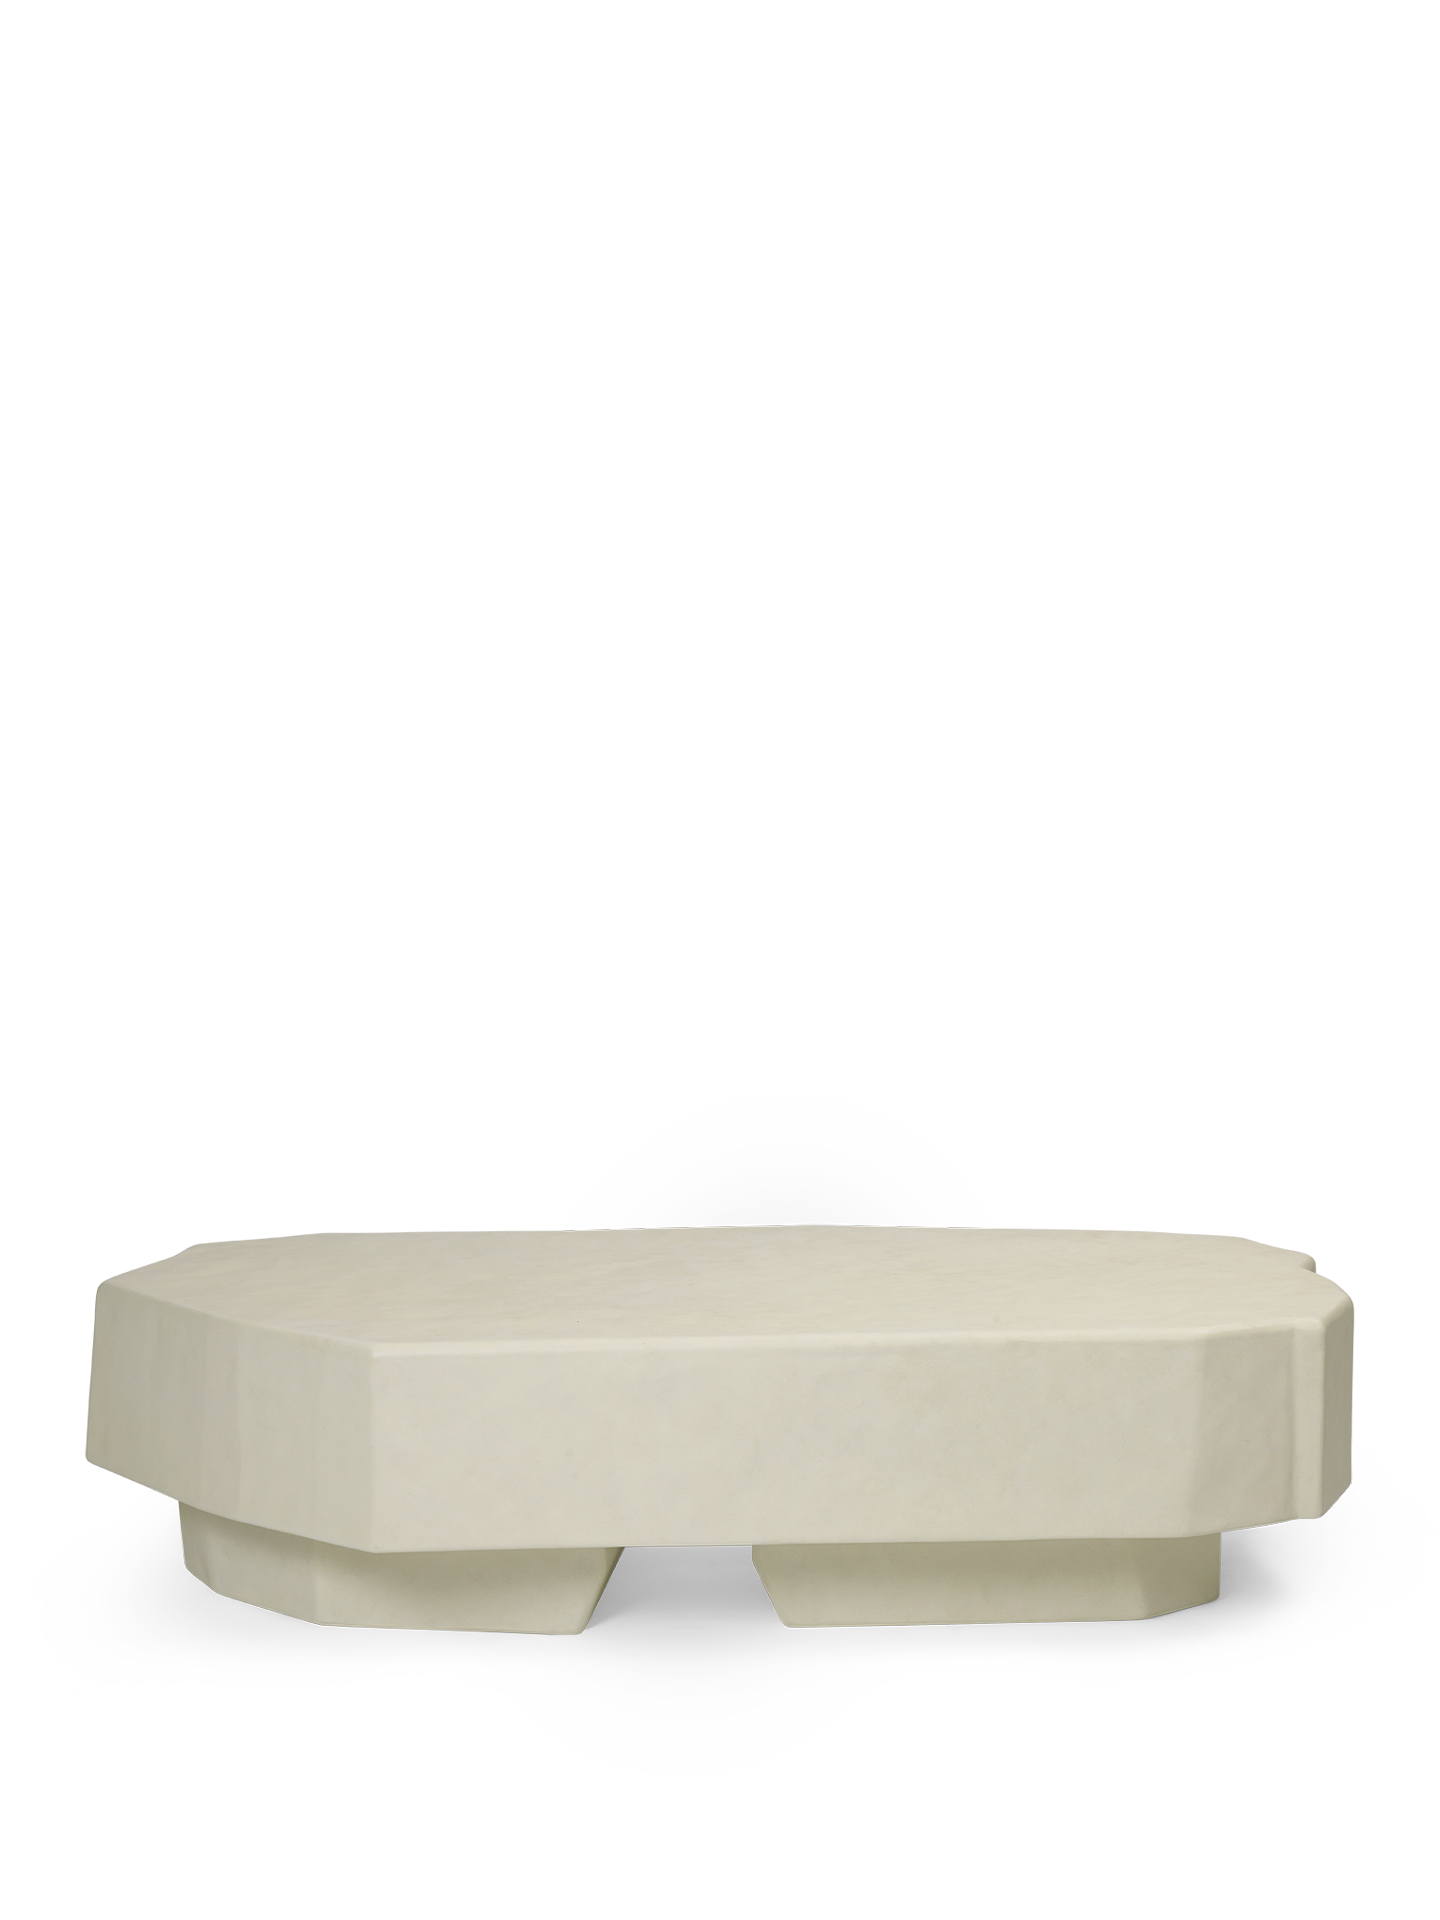 Staffa Coffee Table - Ivory beställningsvara finns ett ex i butik